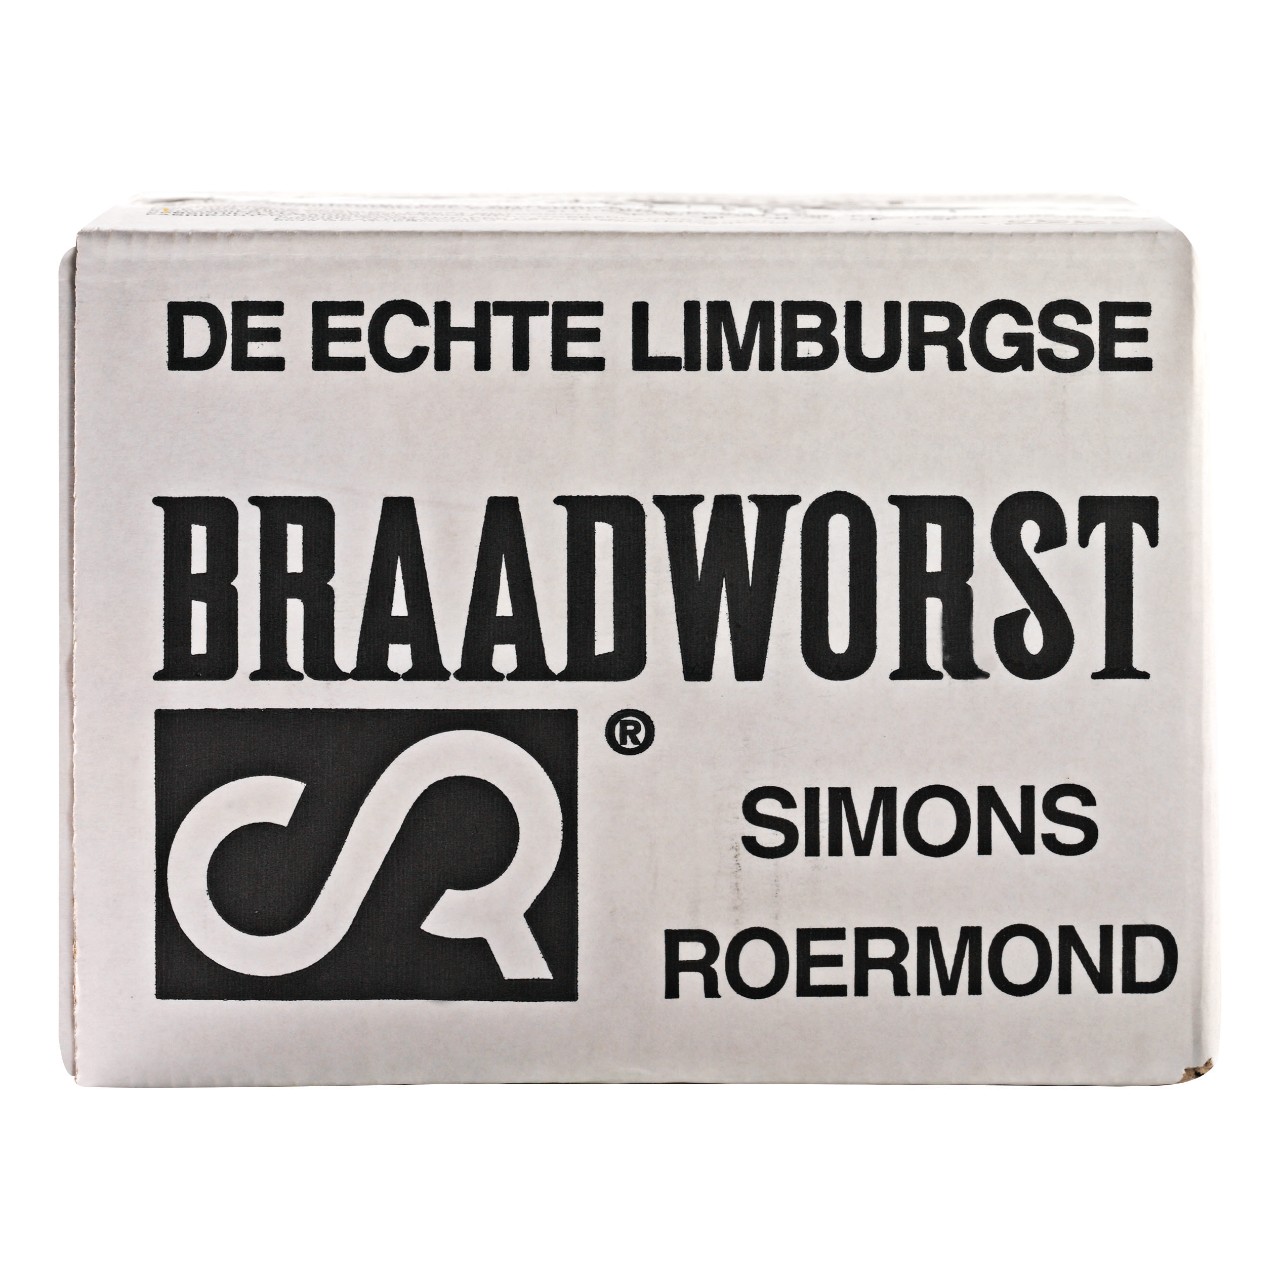 Braadworst